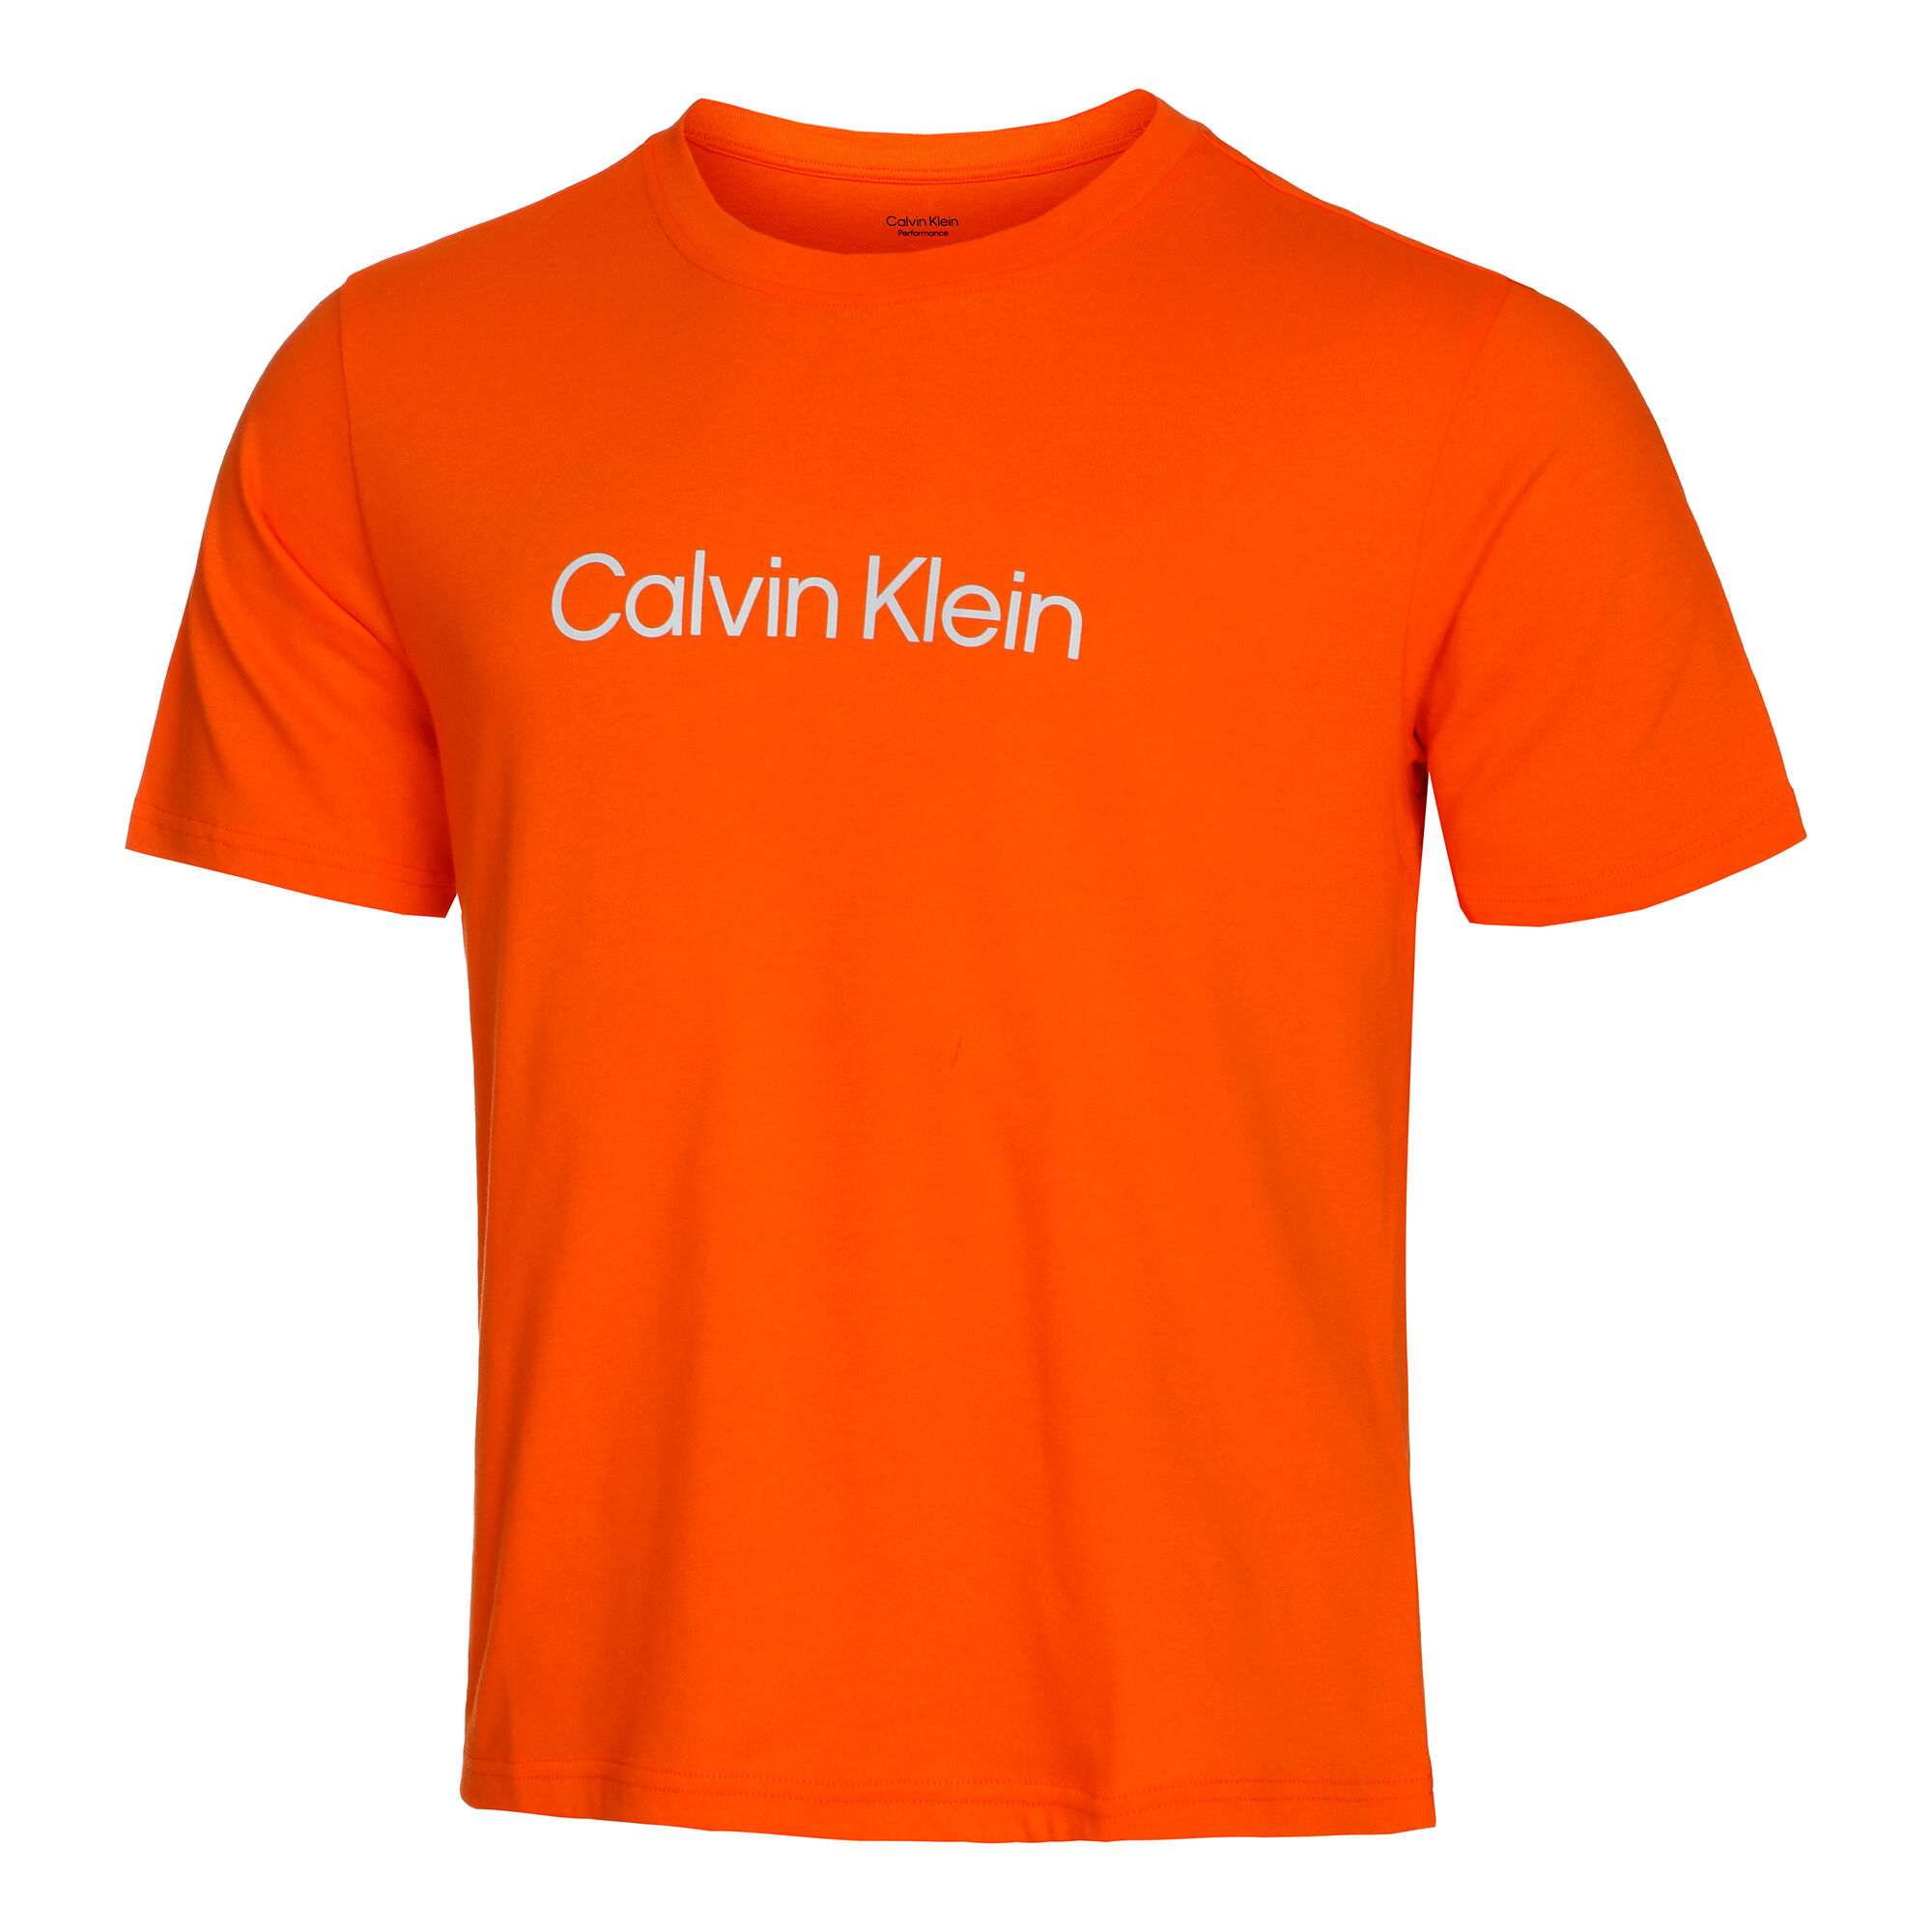 Calvin Klein T-Shirt Herren Orange online kaufen | Tennis Point AT